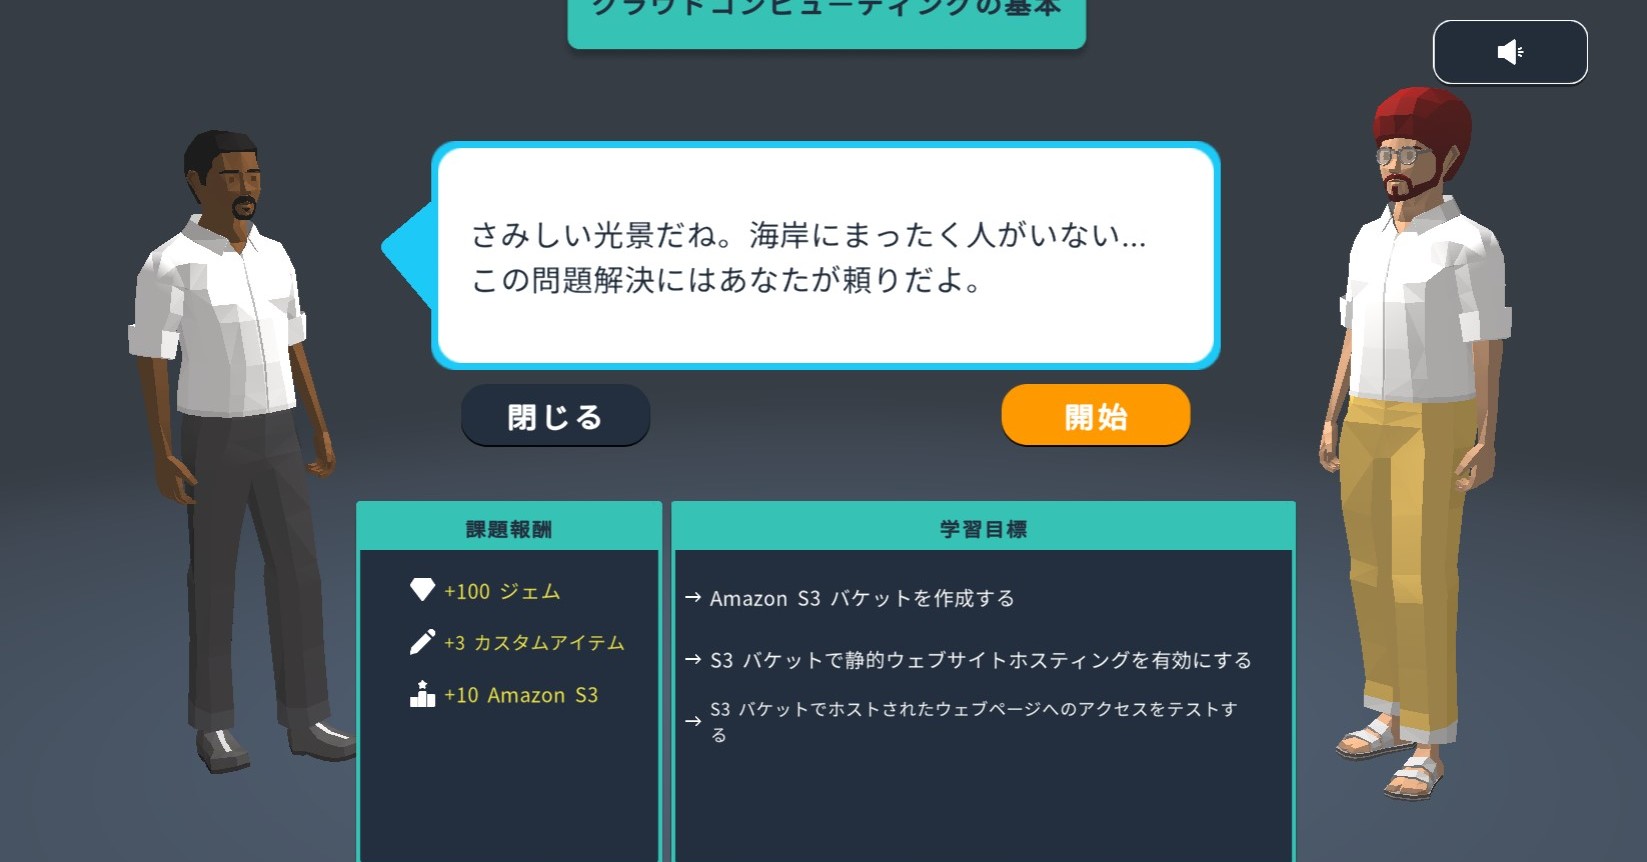 遊びながらAWSを学べる“AWSクエスト”日本語対応　クラウドで街を救うRPG　プレイ無料